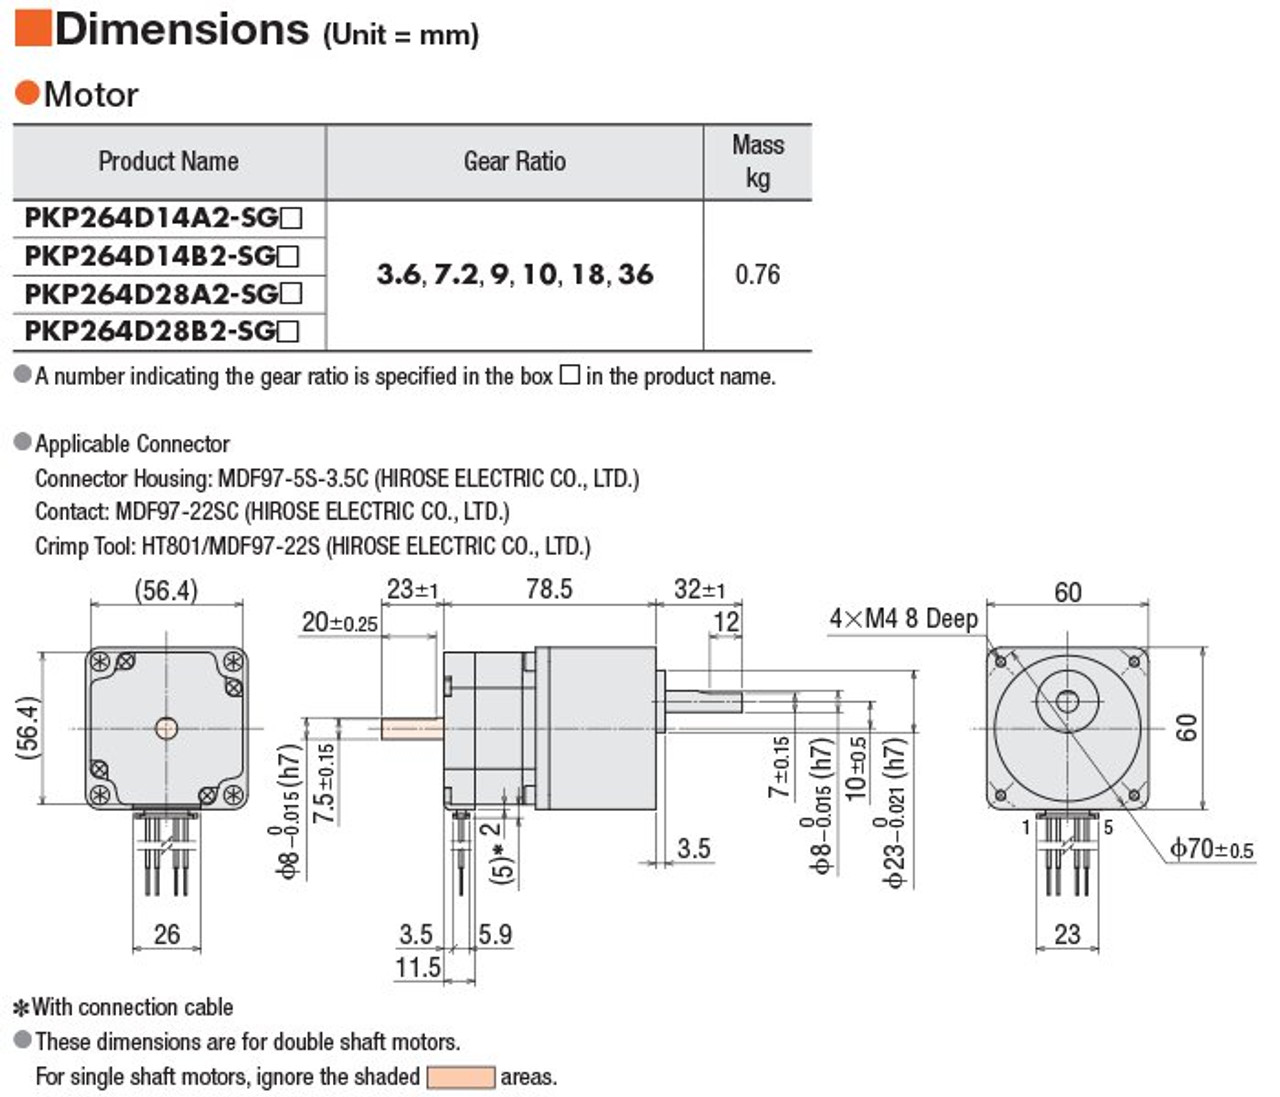 PKP264D28B2-SG10 - Dimensions